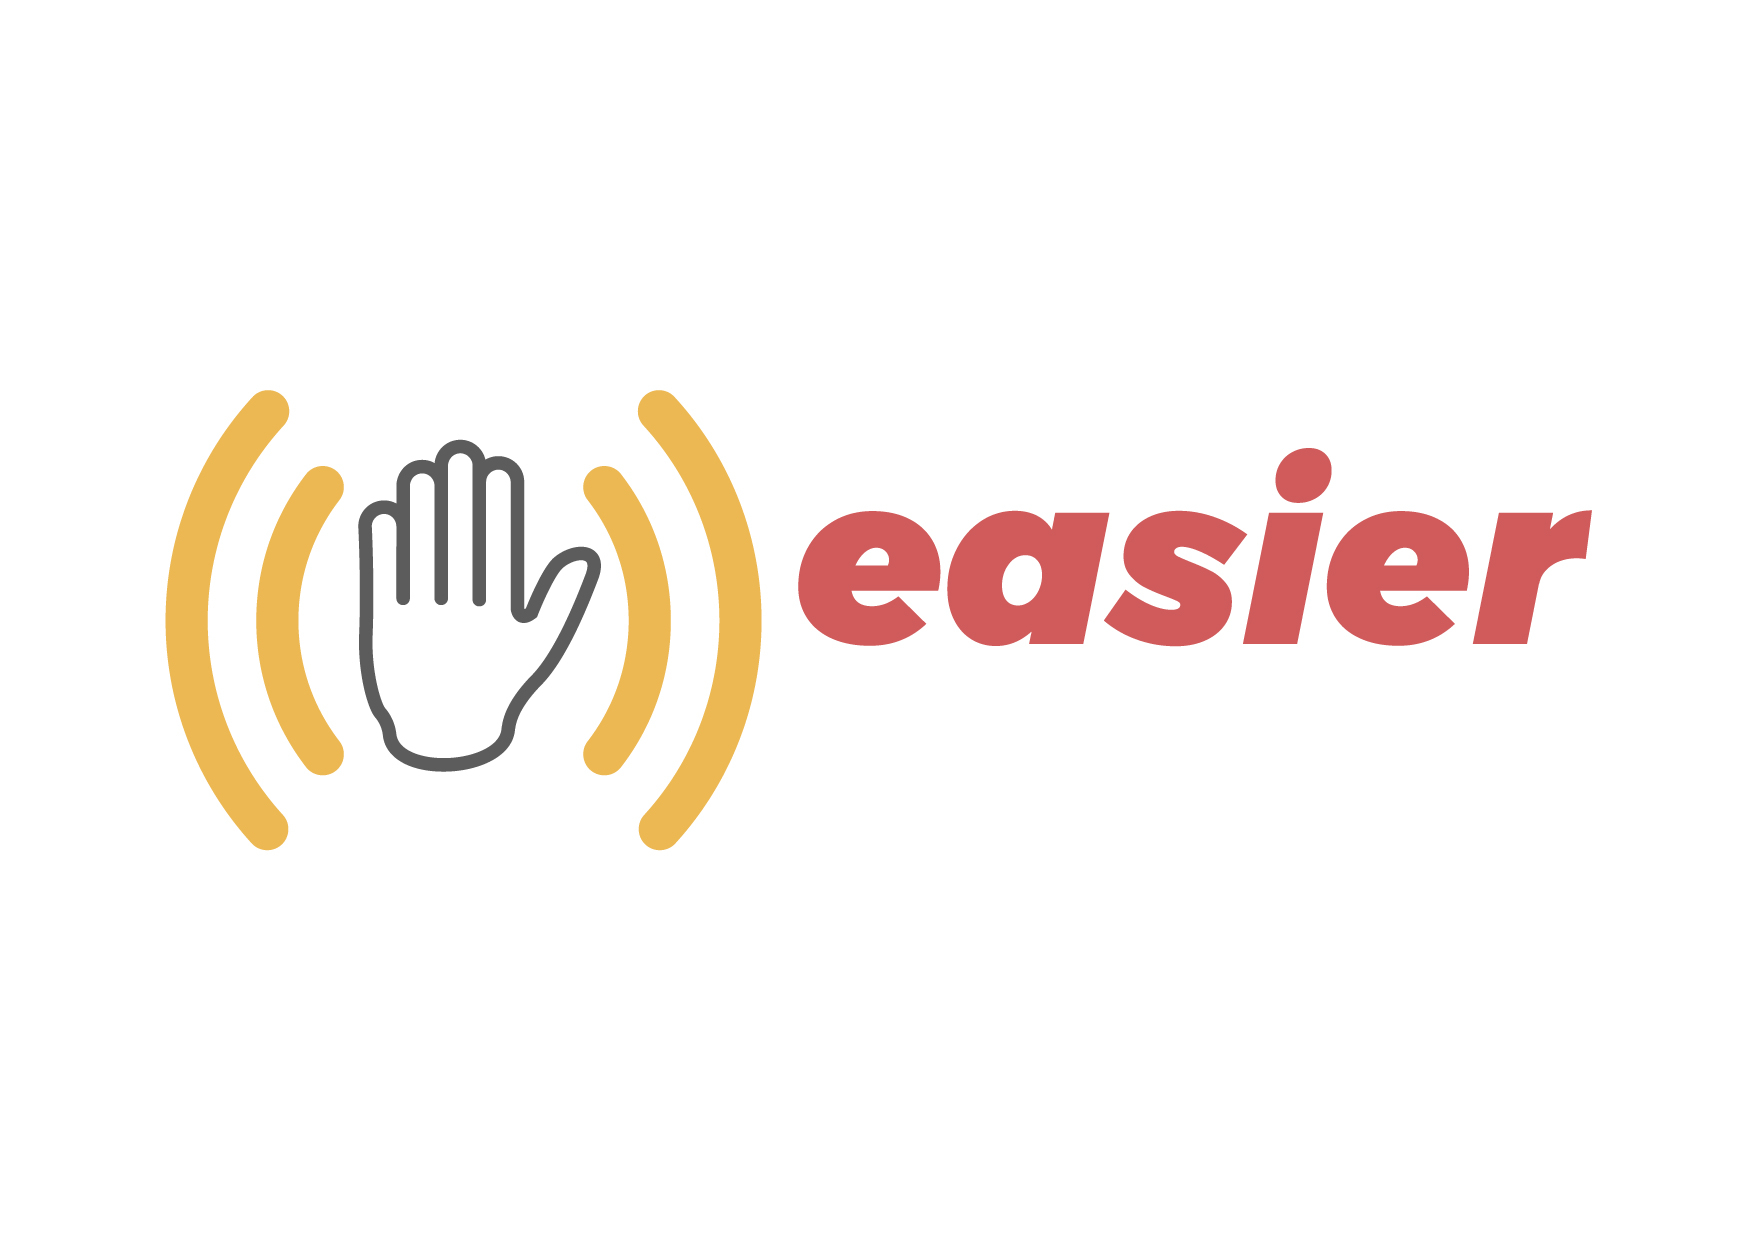 Logo des easier-Projekts: links ist ein Umriss einer Hand zu sehen, um die Hand sind je zwei gebogene Linien in Gelb rechts und links. Rechts steht in roter Schrift easier.